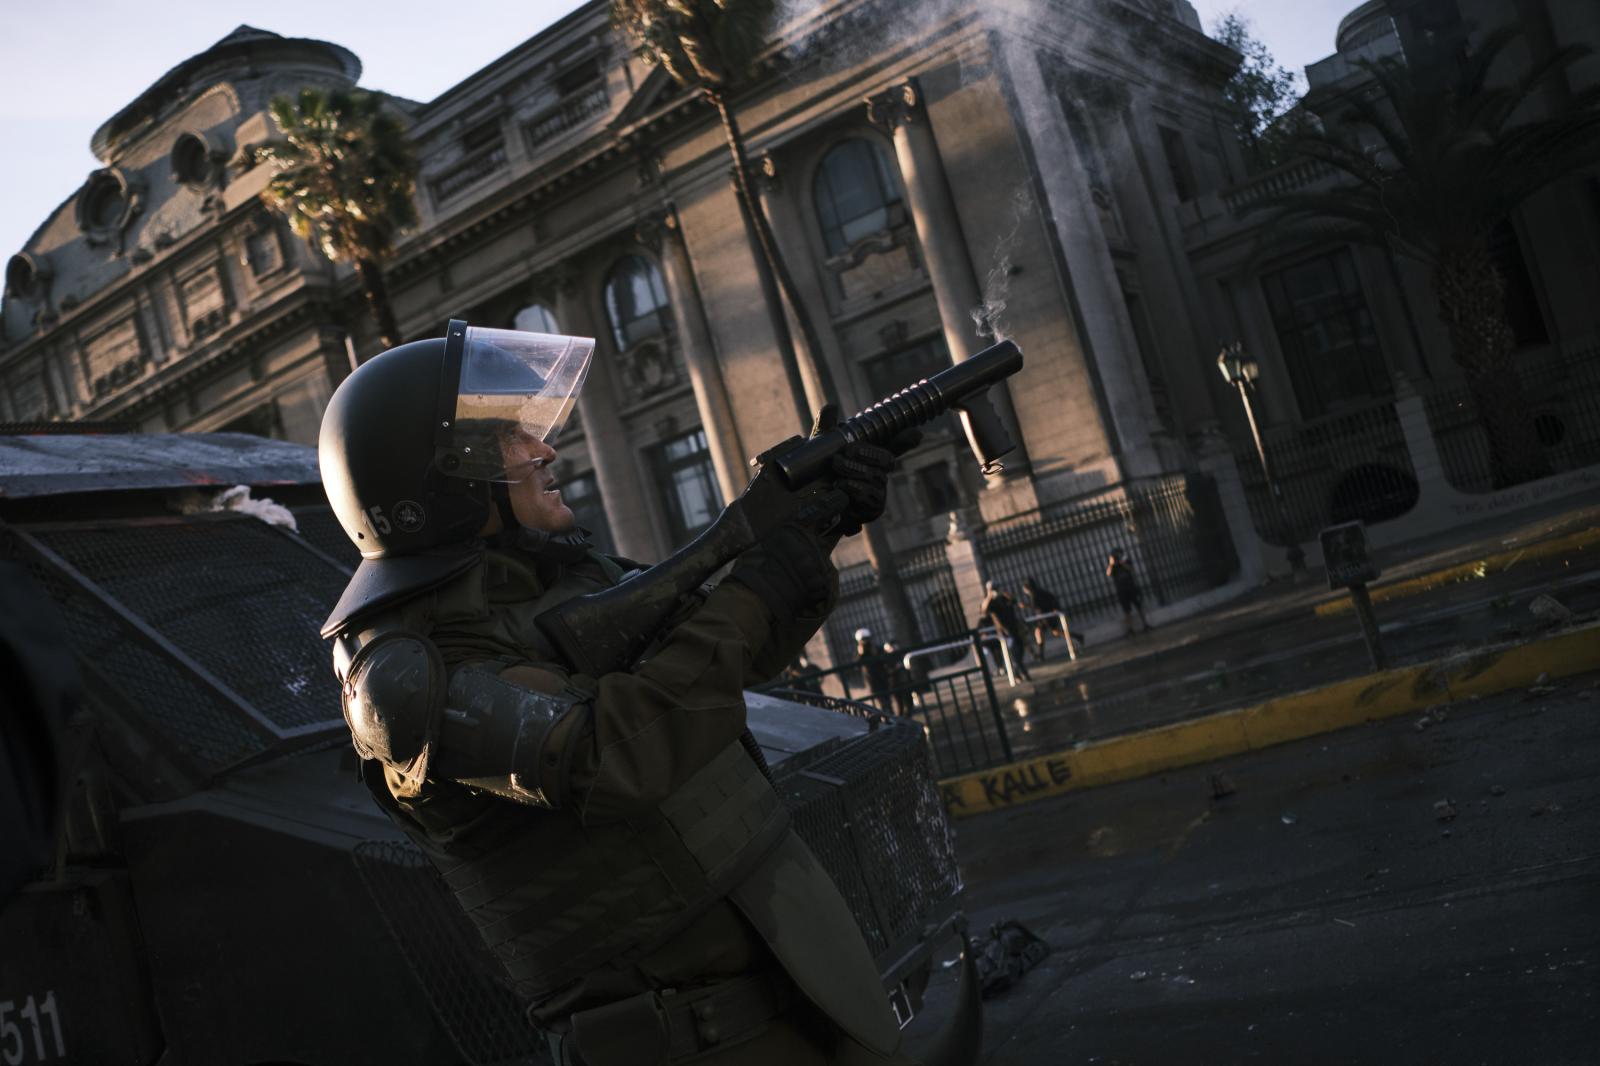 Image from CHILE: From politics to social unrest. - Un carabinero dispara una bomba de gas lacrimogeno hacia...